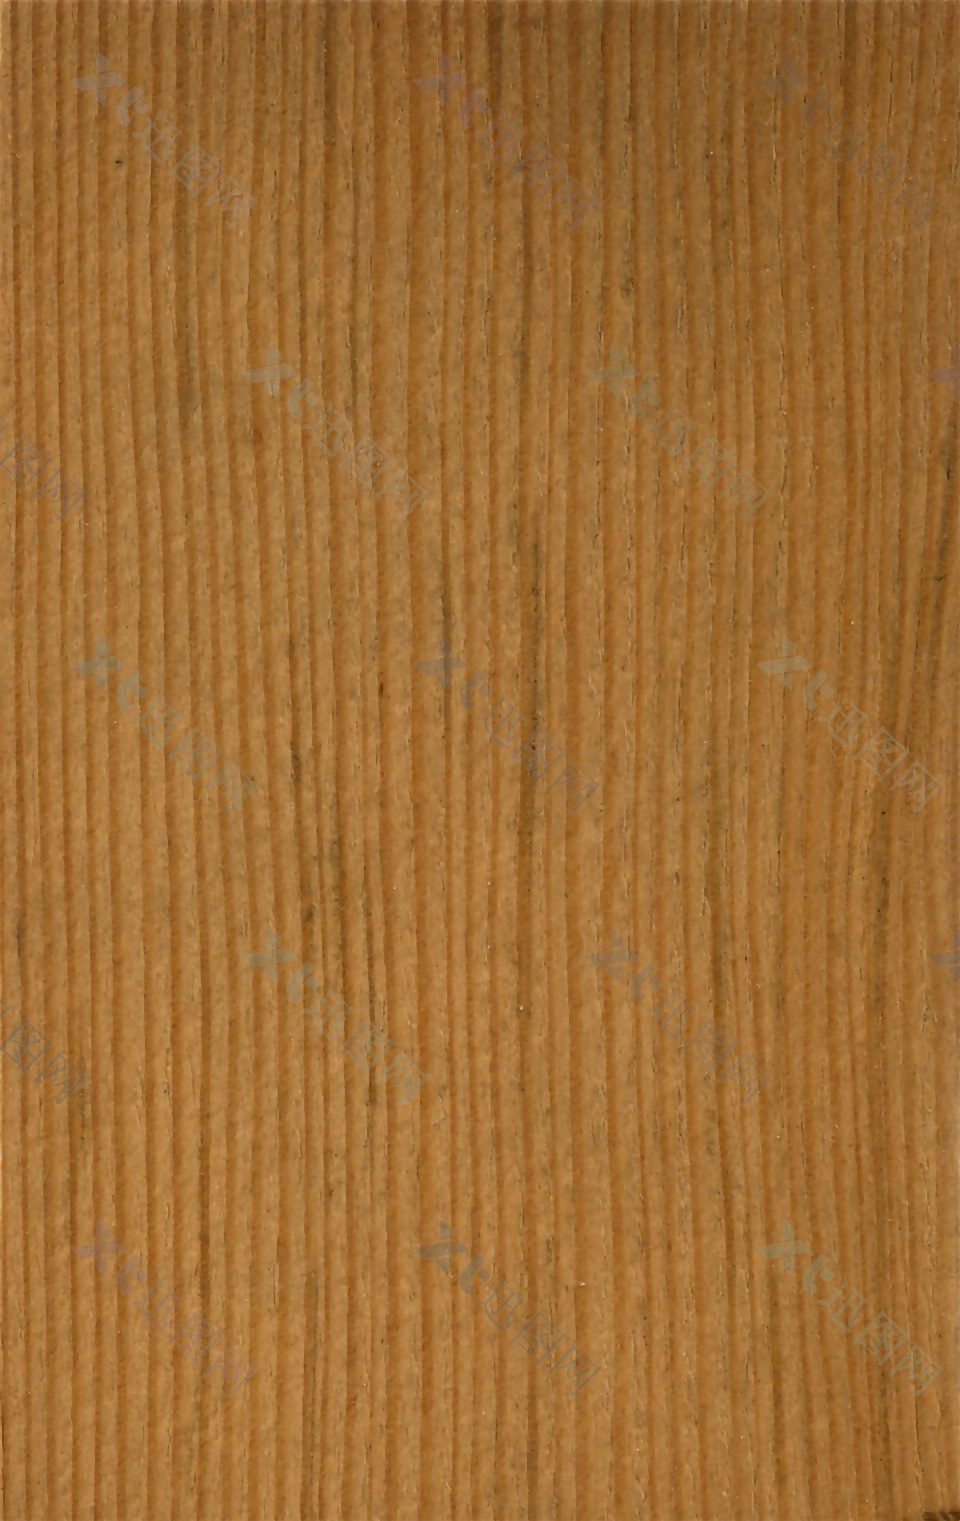 家具设计墙饰面木条纹理贴图